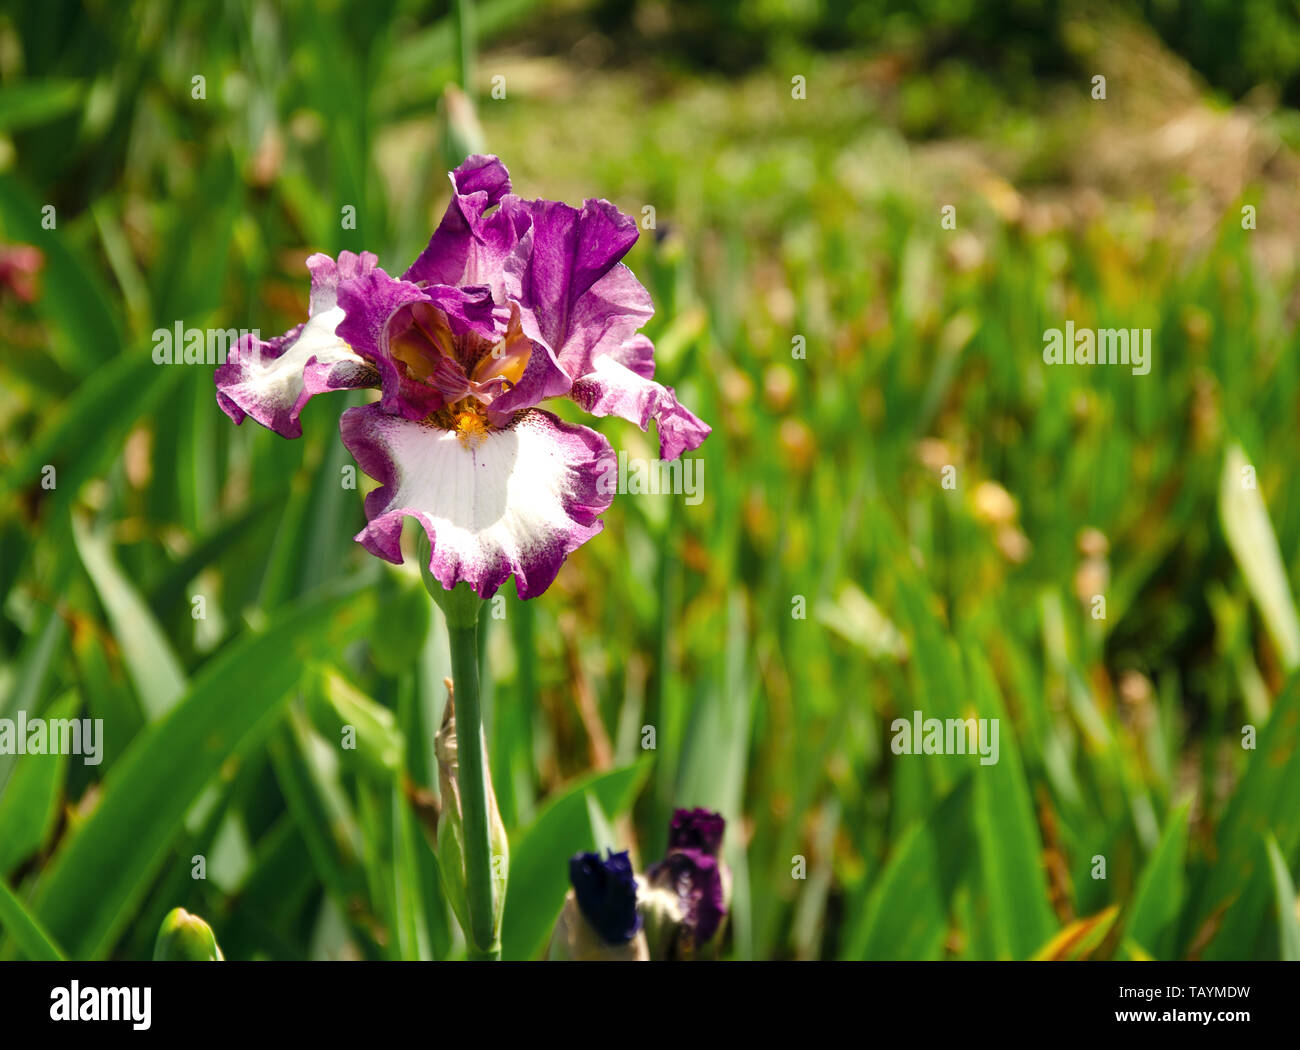 Fleur d'Iris au printemps, le jardin fleur pourpre avec de belles fleurs et arôme inhabituelle, close-up Banque D'Images